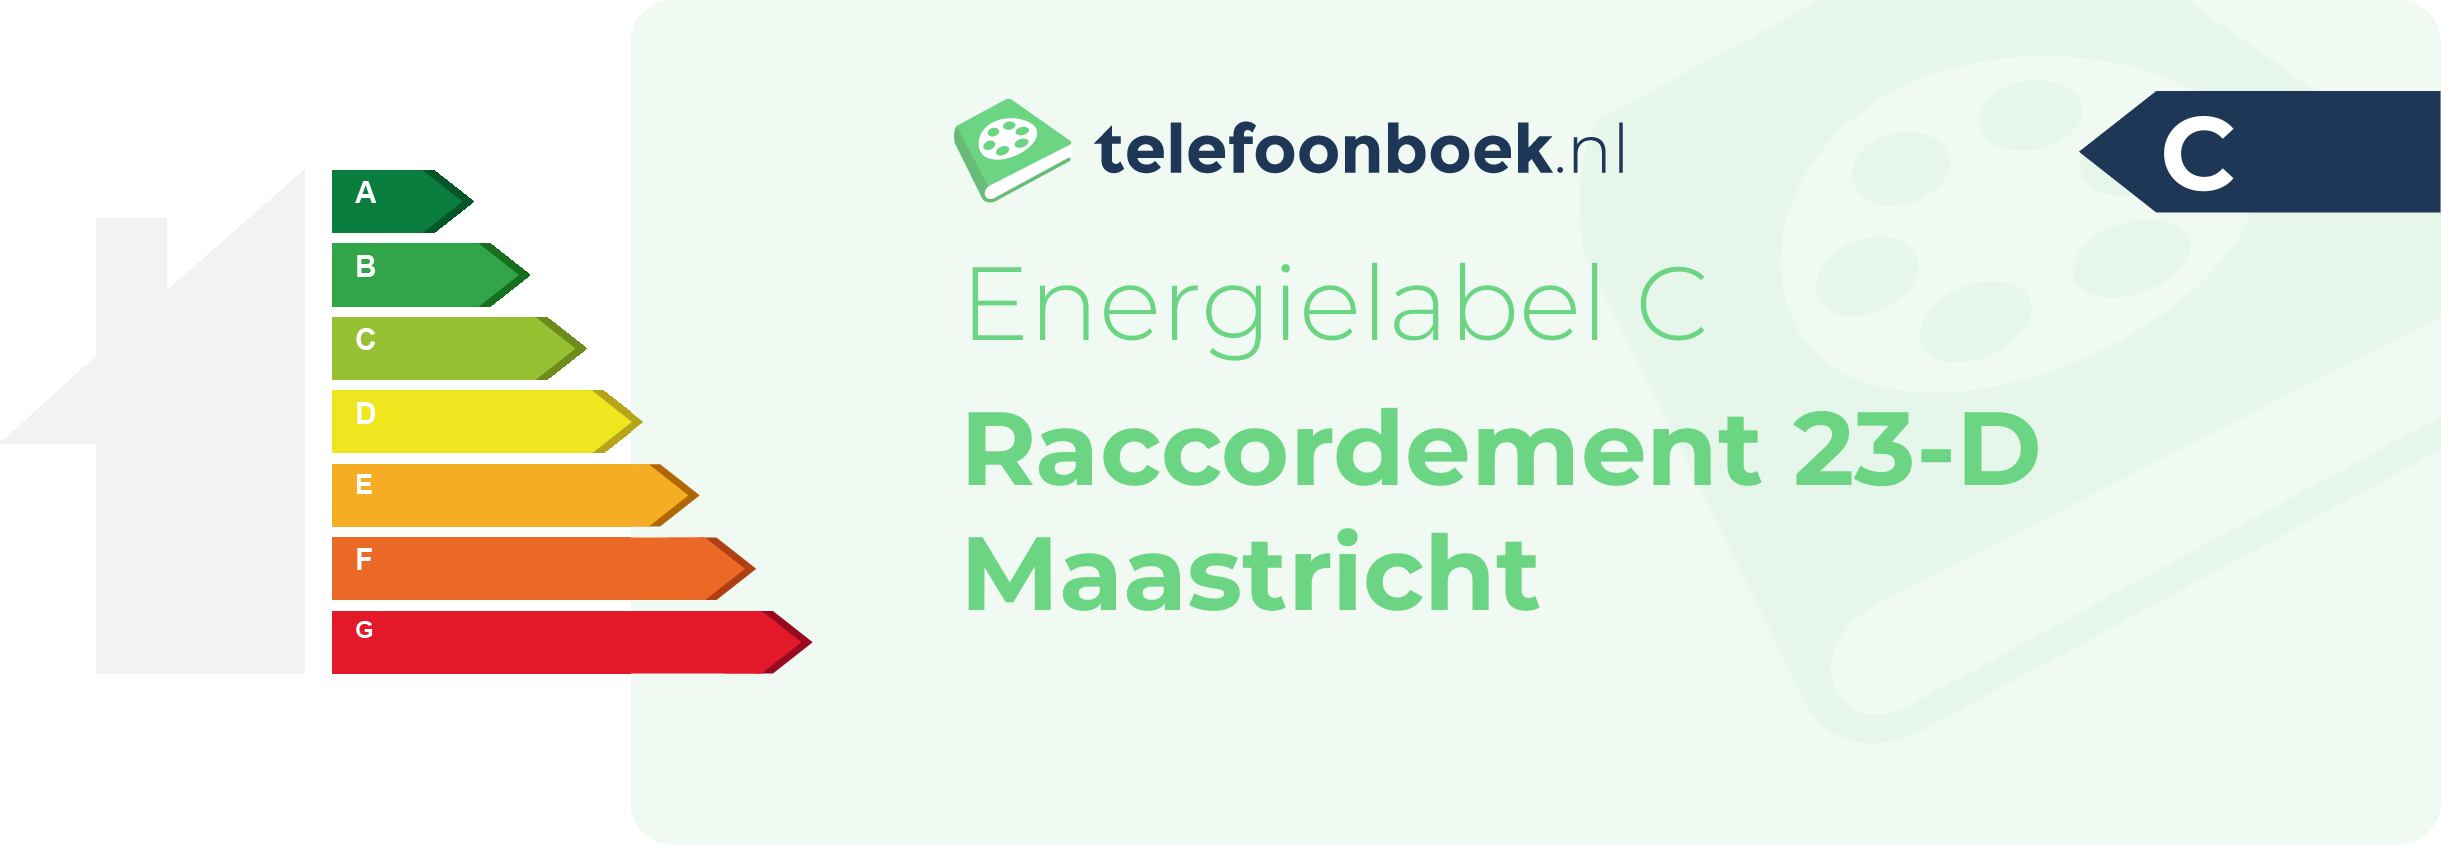 Energielabel Raccordement 23-D Maastricht